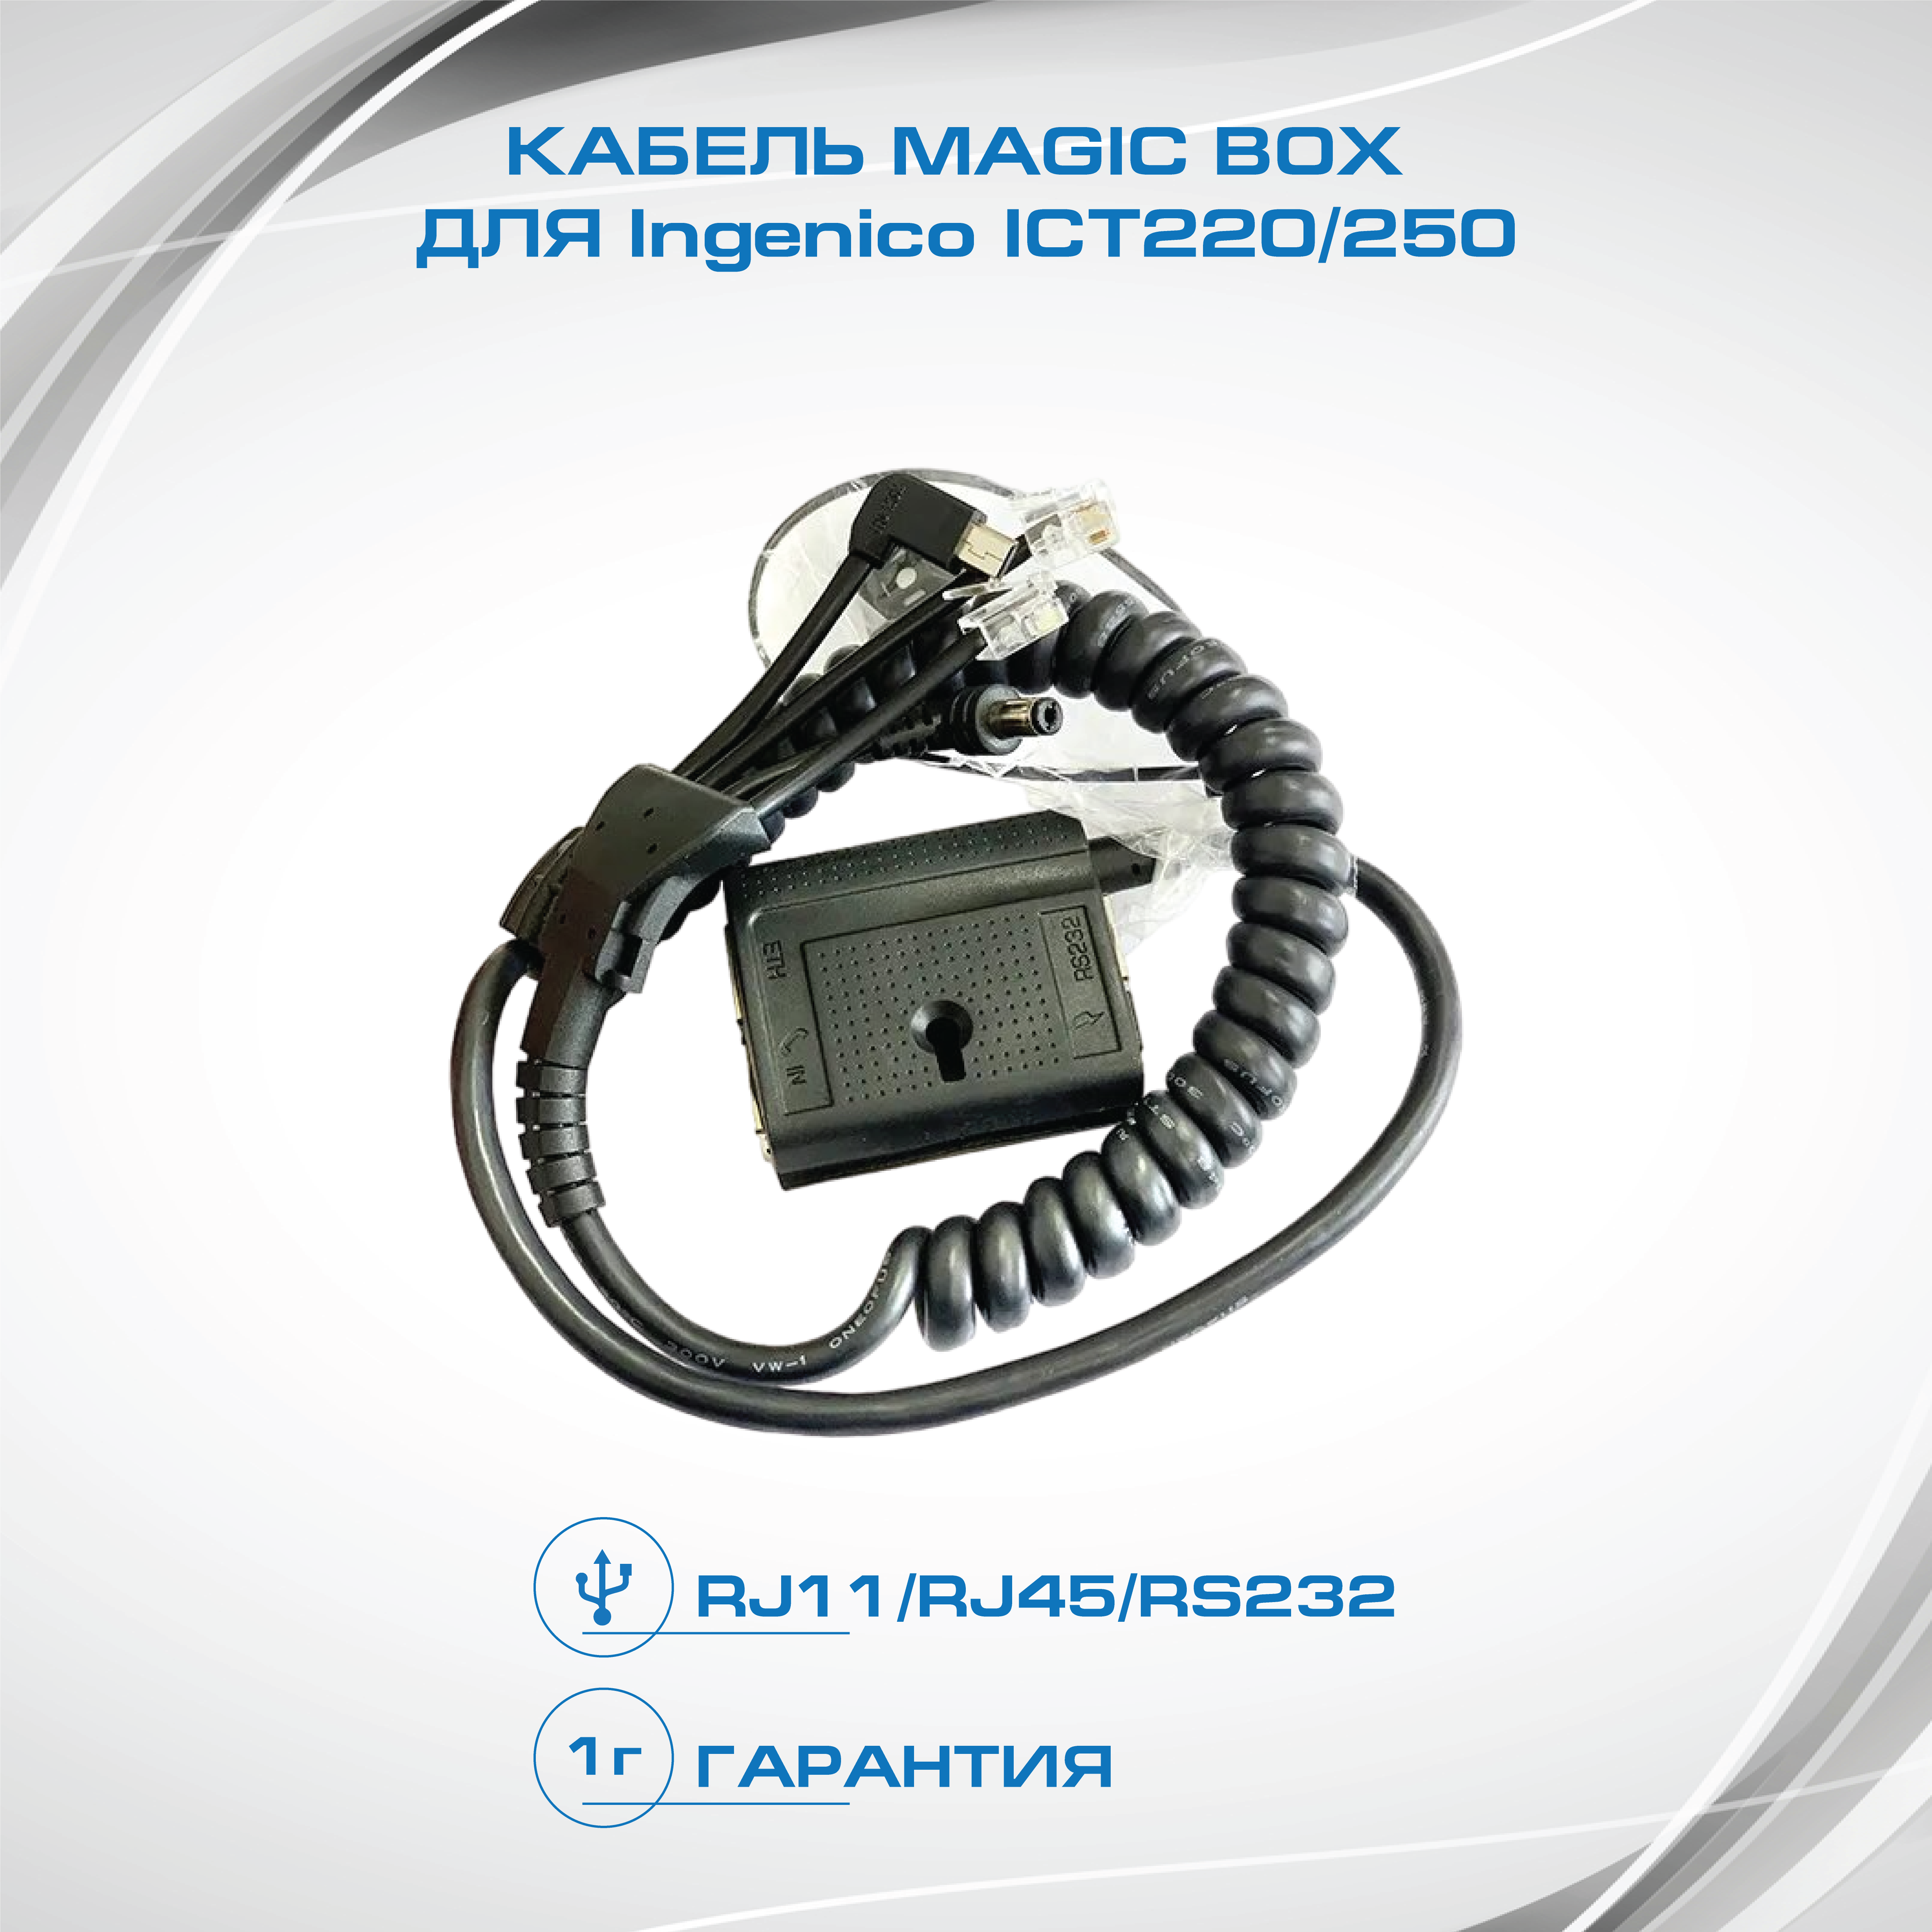 Кабель MagicBox для POS терминала Ingenico (Инженико) iCT220 / iCT250